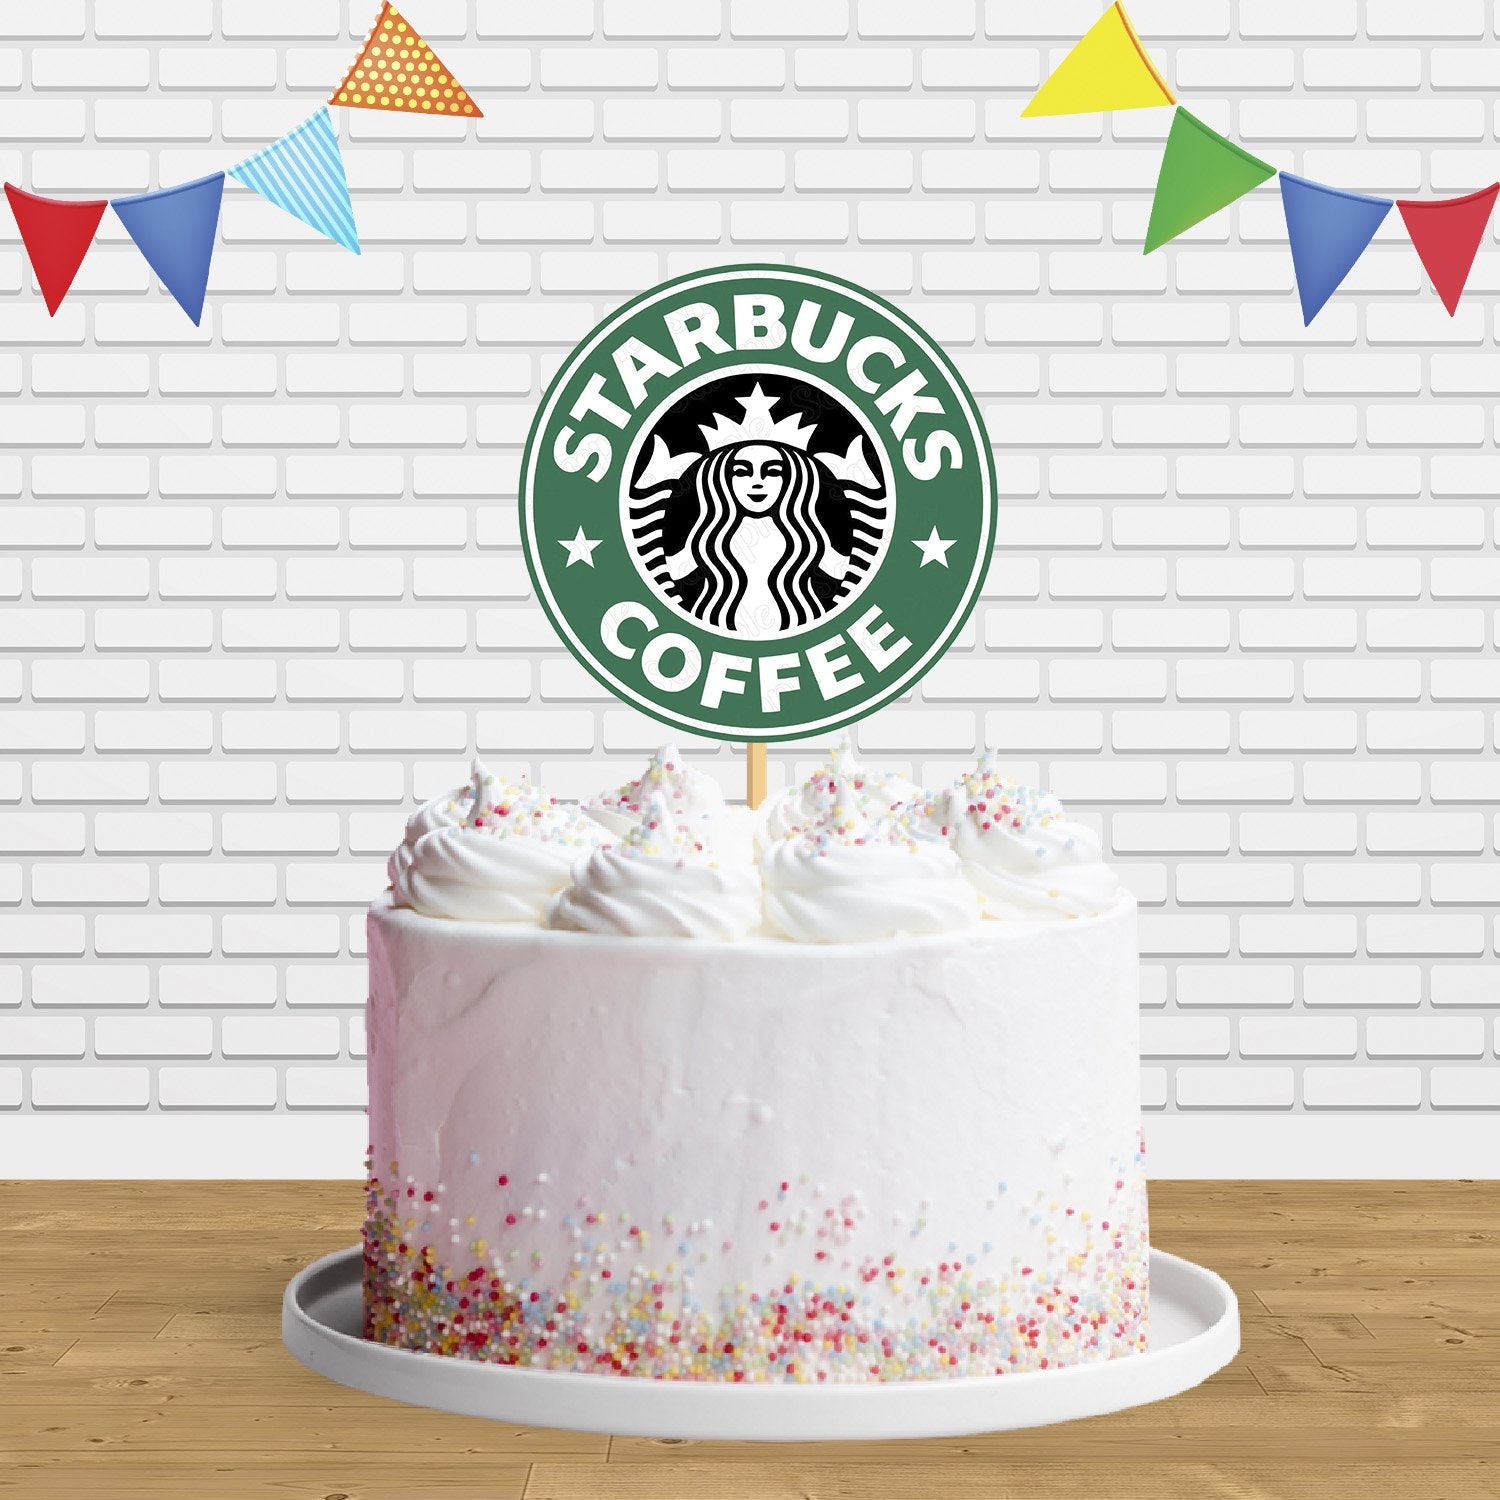 starbucks-coffee-designer-theme-birthday-wedding-engagement-cakes-cupcakes-mumbai-44  | Cupcake cakes, Starbucks cake, Starbucks birthday